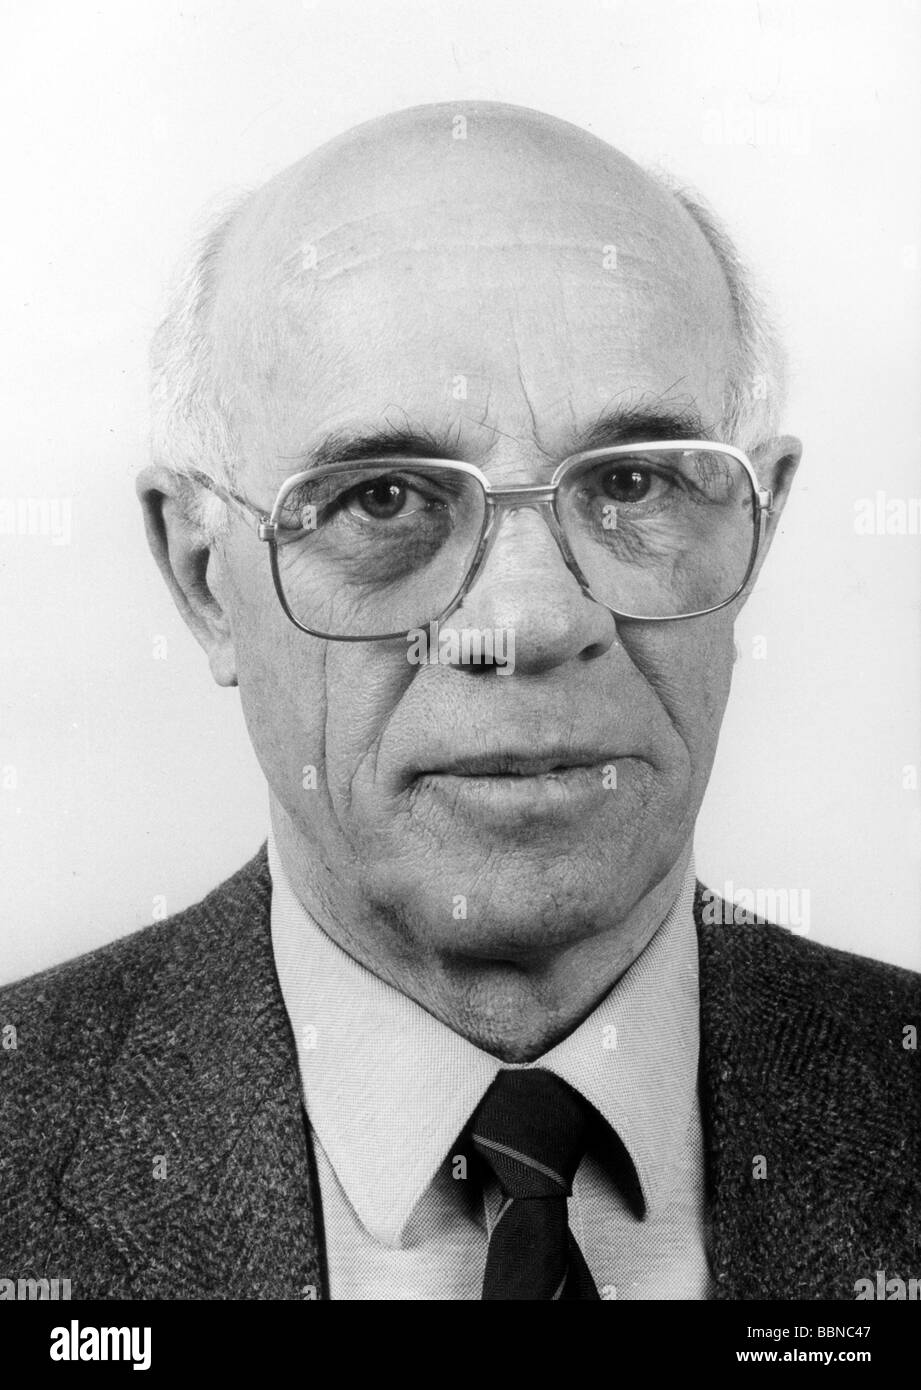 Frueh, Isidor, 13.4.1922 - 28.8.2002, politico tedesco (CDU), membro del Parlamento europeo, ritratto, 1980s, , Foto Stock